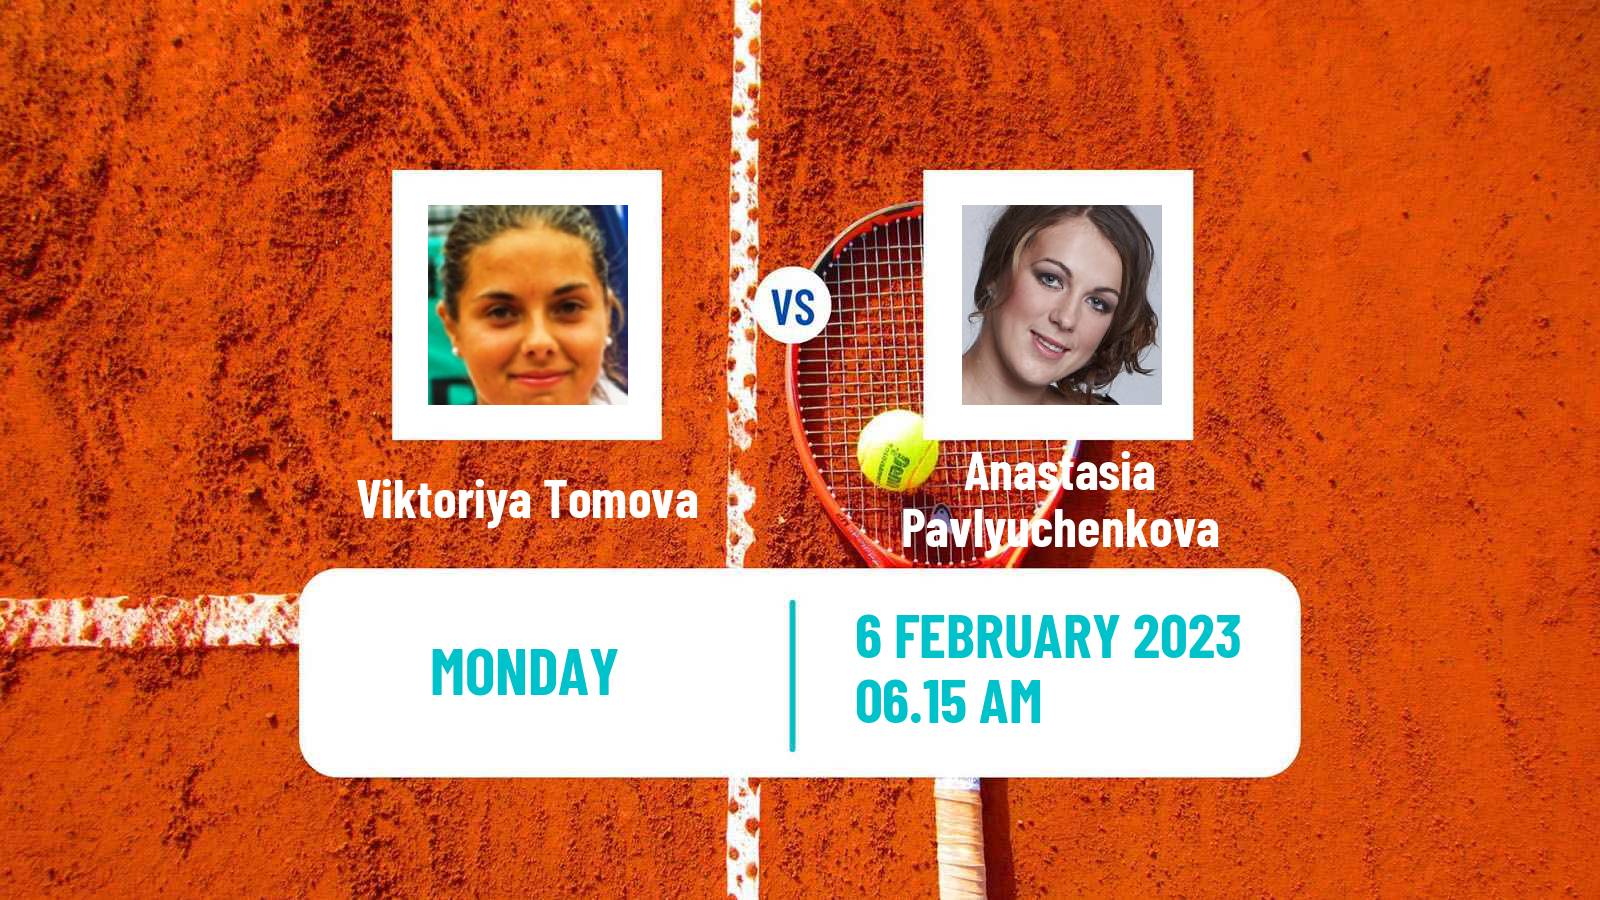 Tennis WTA Linz Viktoriya Tomova - Anastasia Pavlyuchenkova